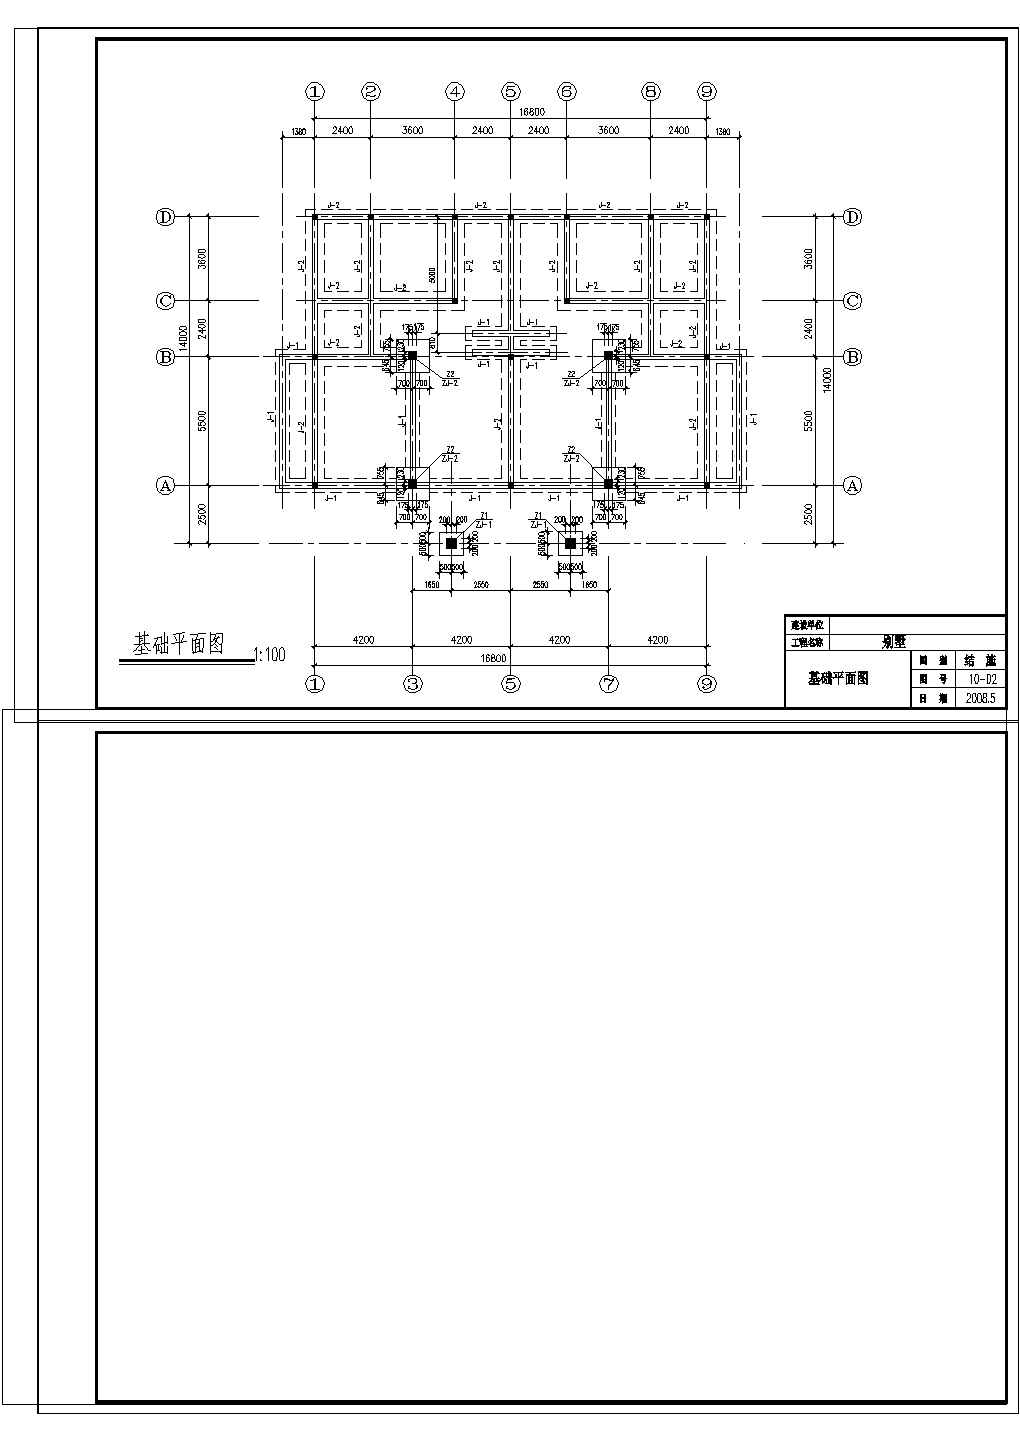 某三层砖混别墅全套施工图纸(含建筑、结构、设备图)